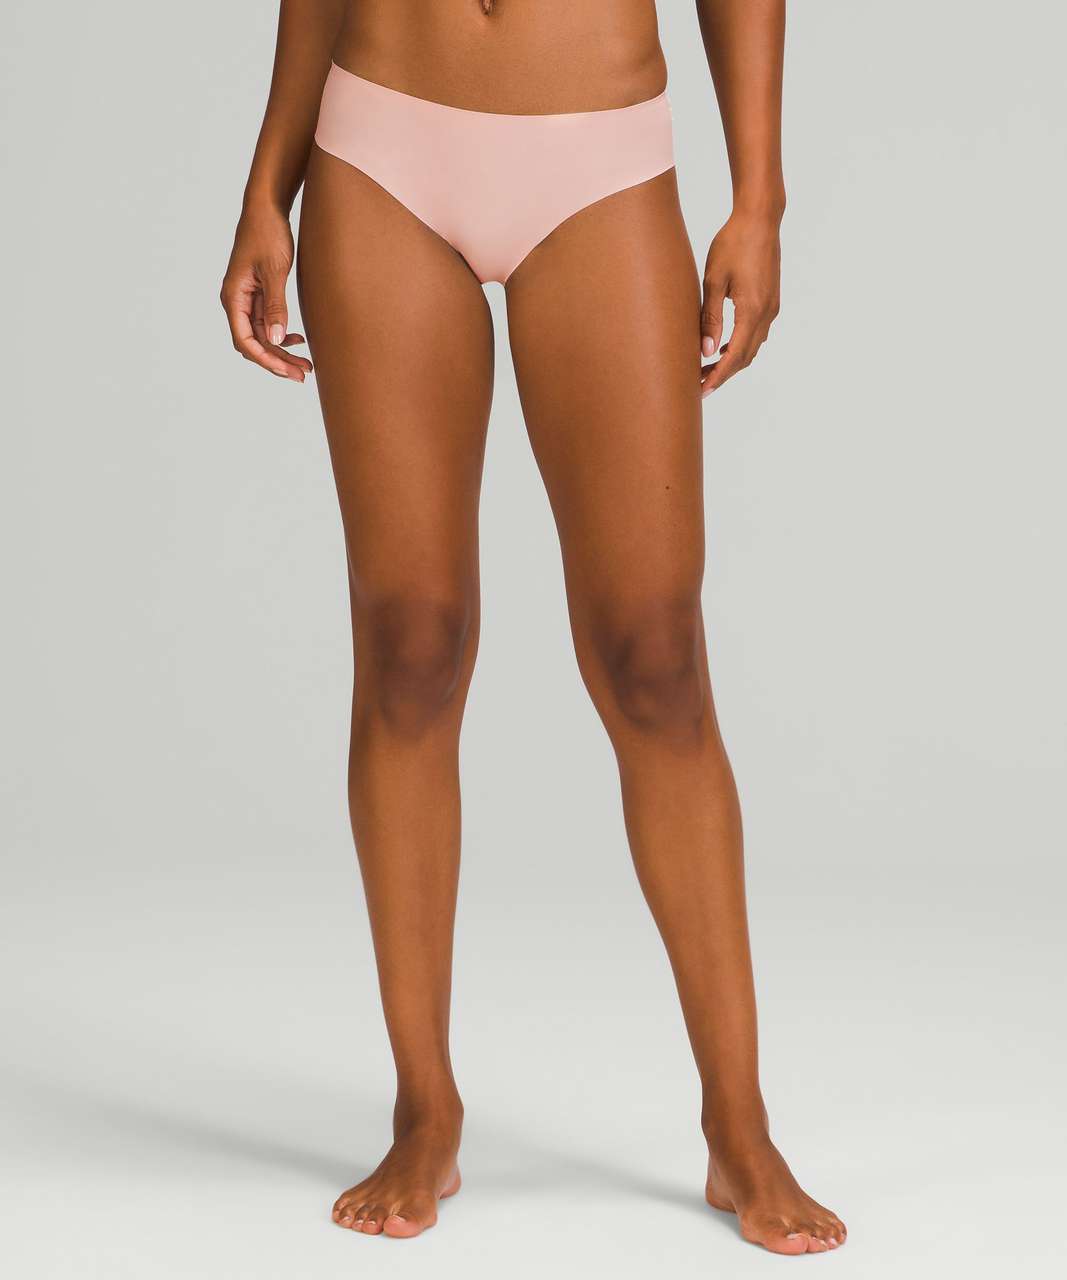 Lululemon InvisiWear Mid Rise Bikini Underwear 3 Pack - Heritage 365 Camo Mini Rotated Pecan Tan Multi / Pink Mist / Black